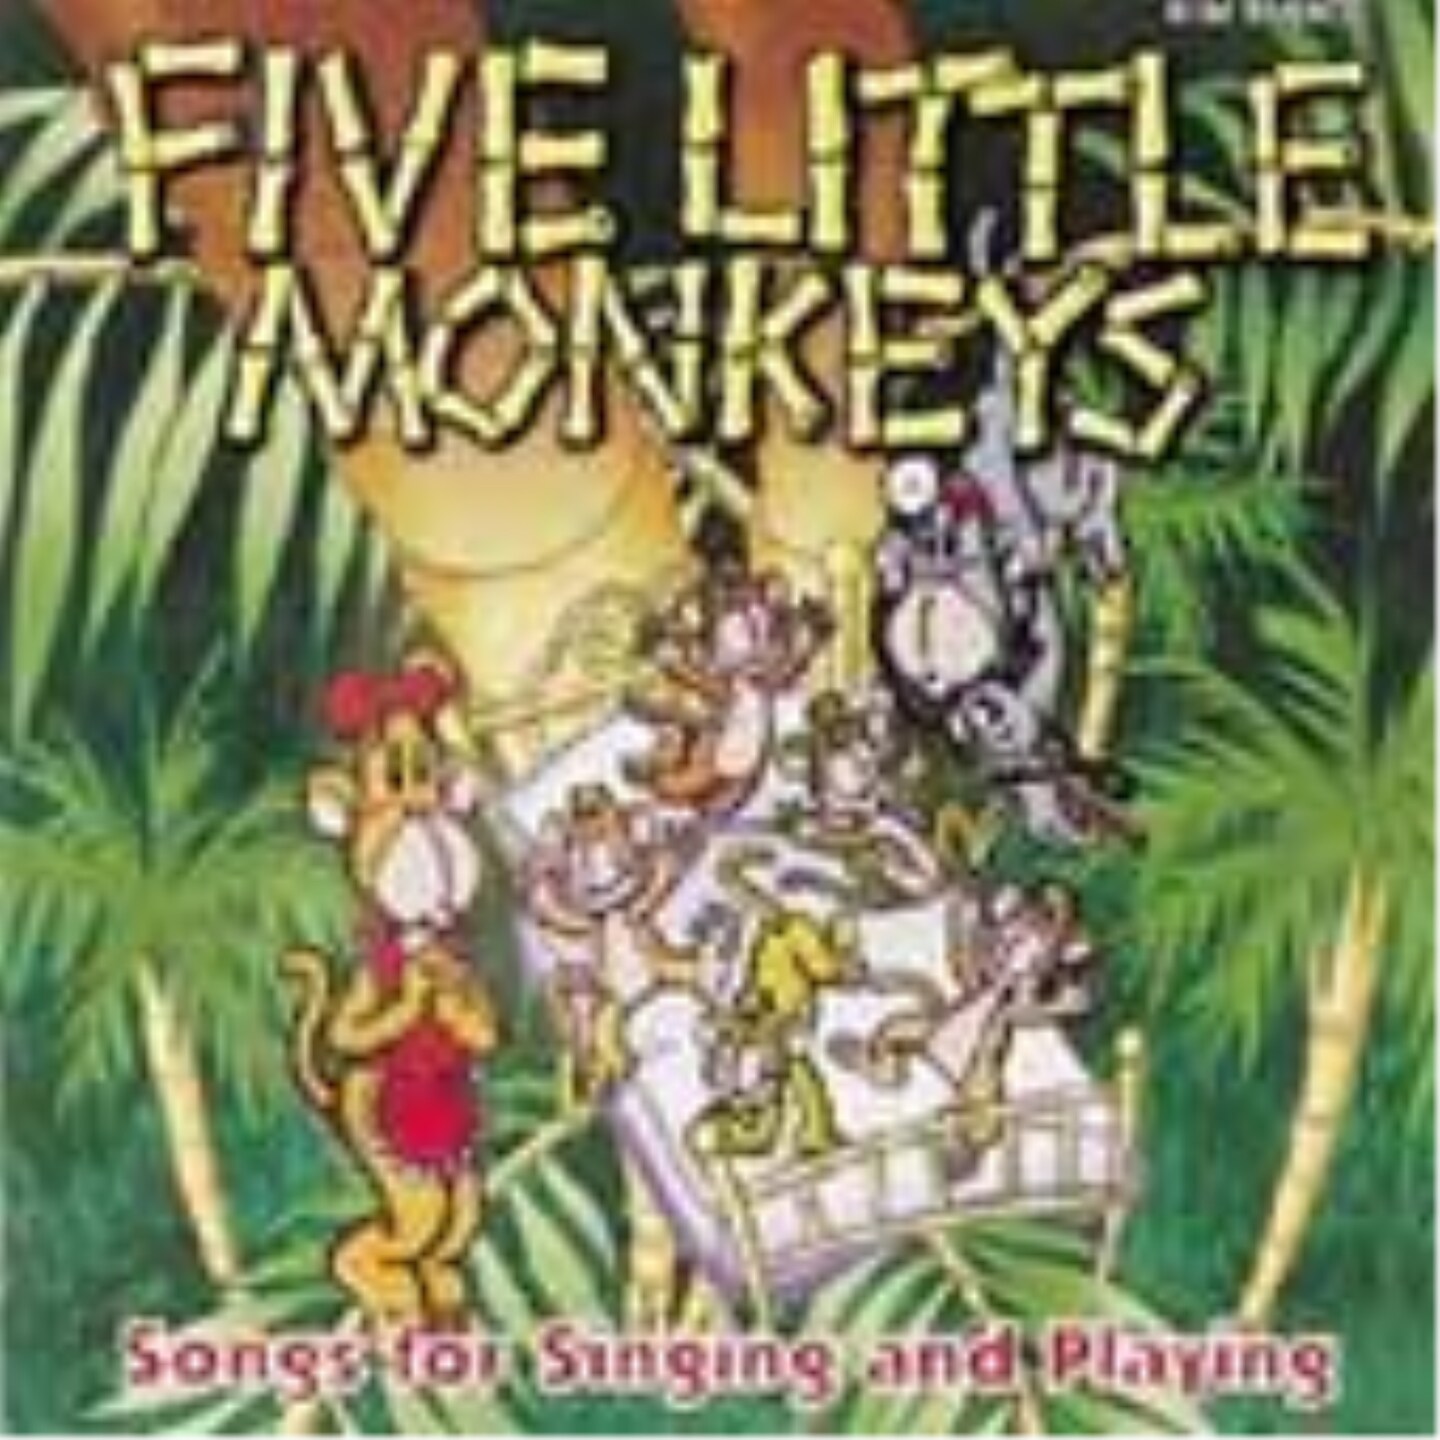 Five Little Monkeys Educational CD